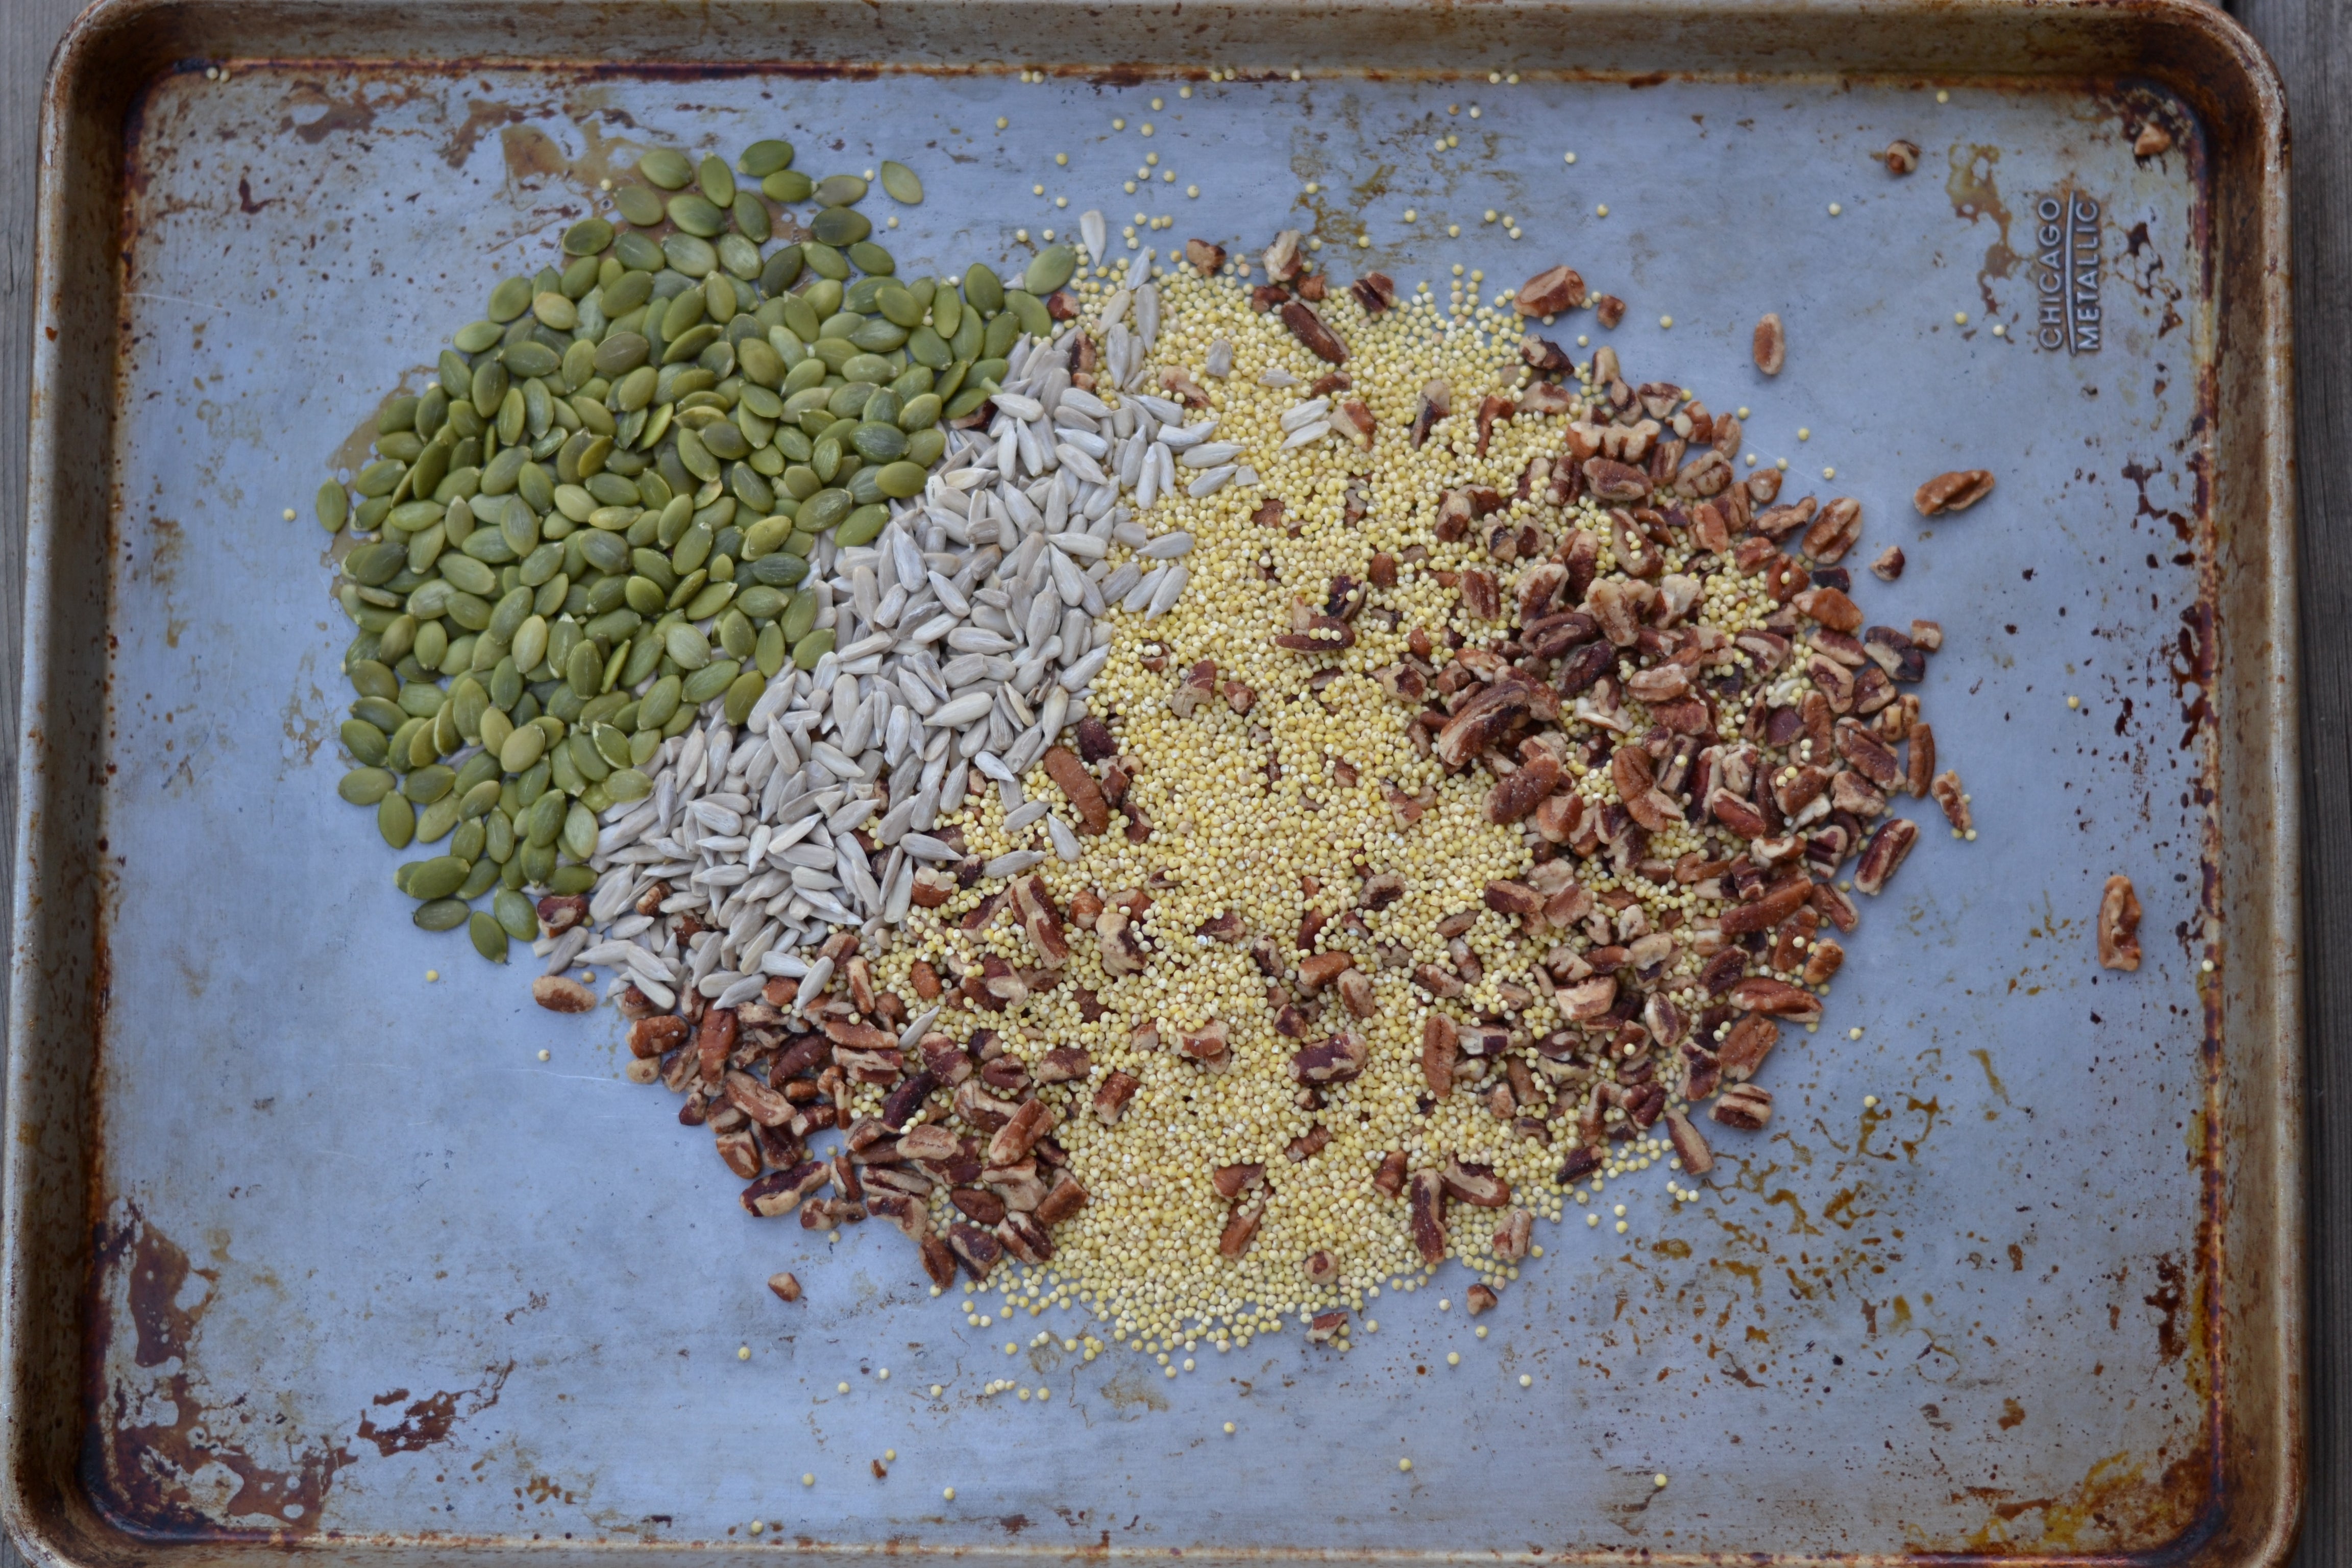 millet, sunflower seeds, walnuts, pumpkin seeds